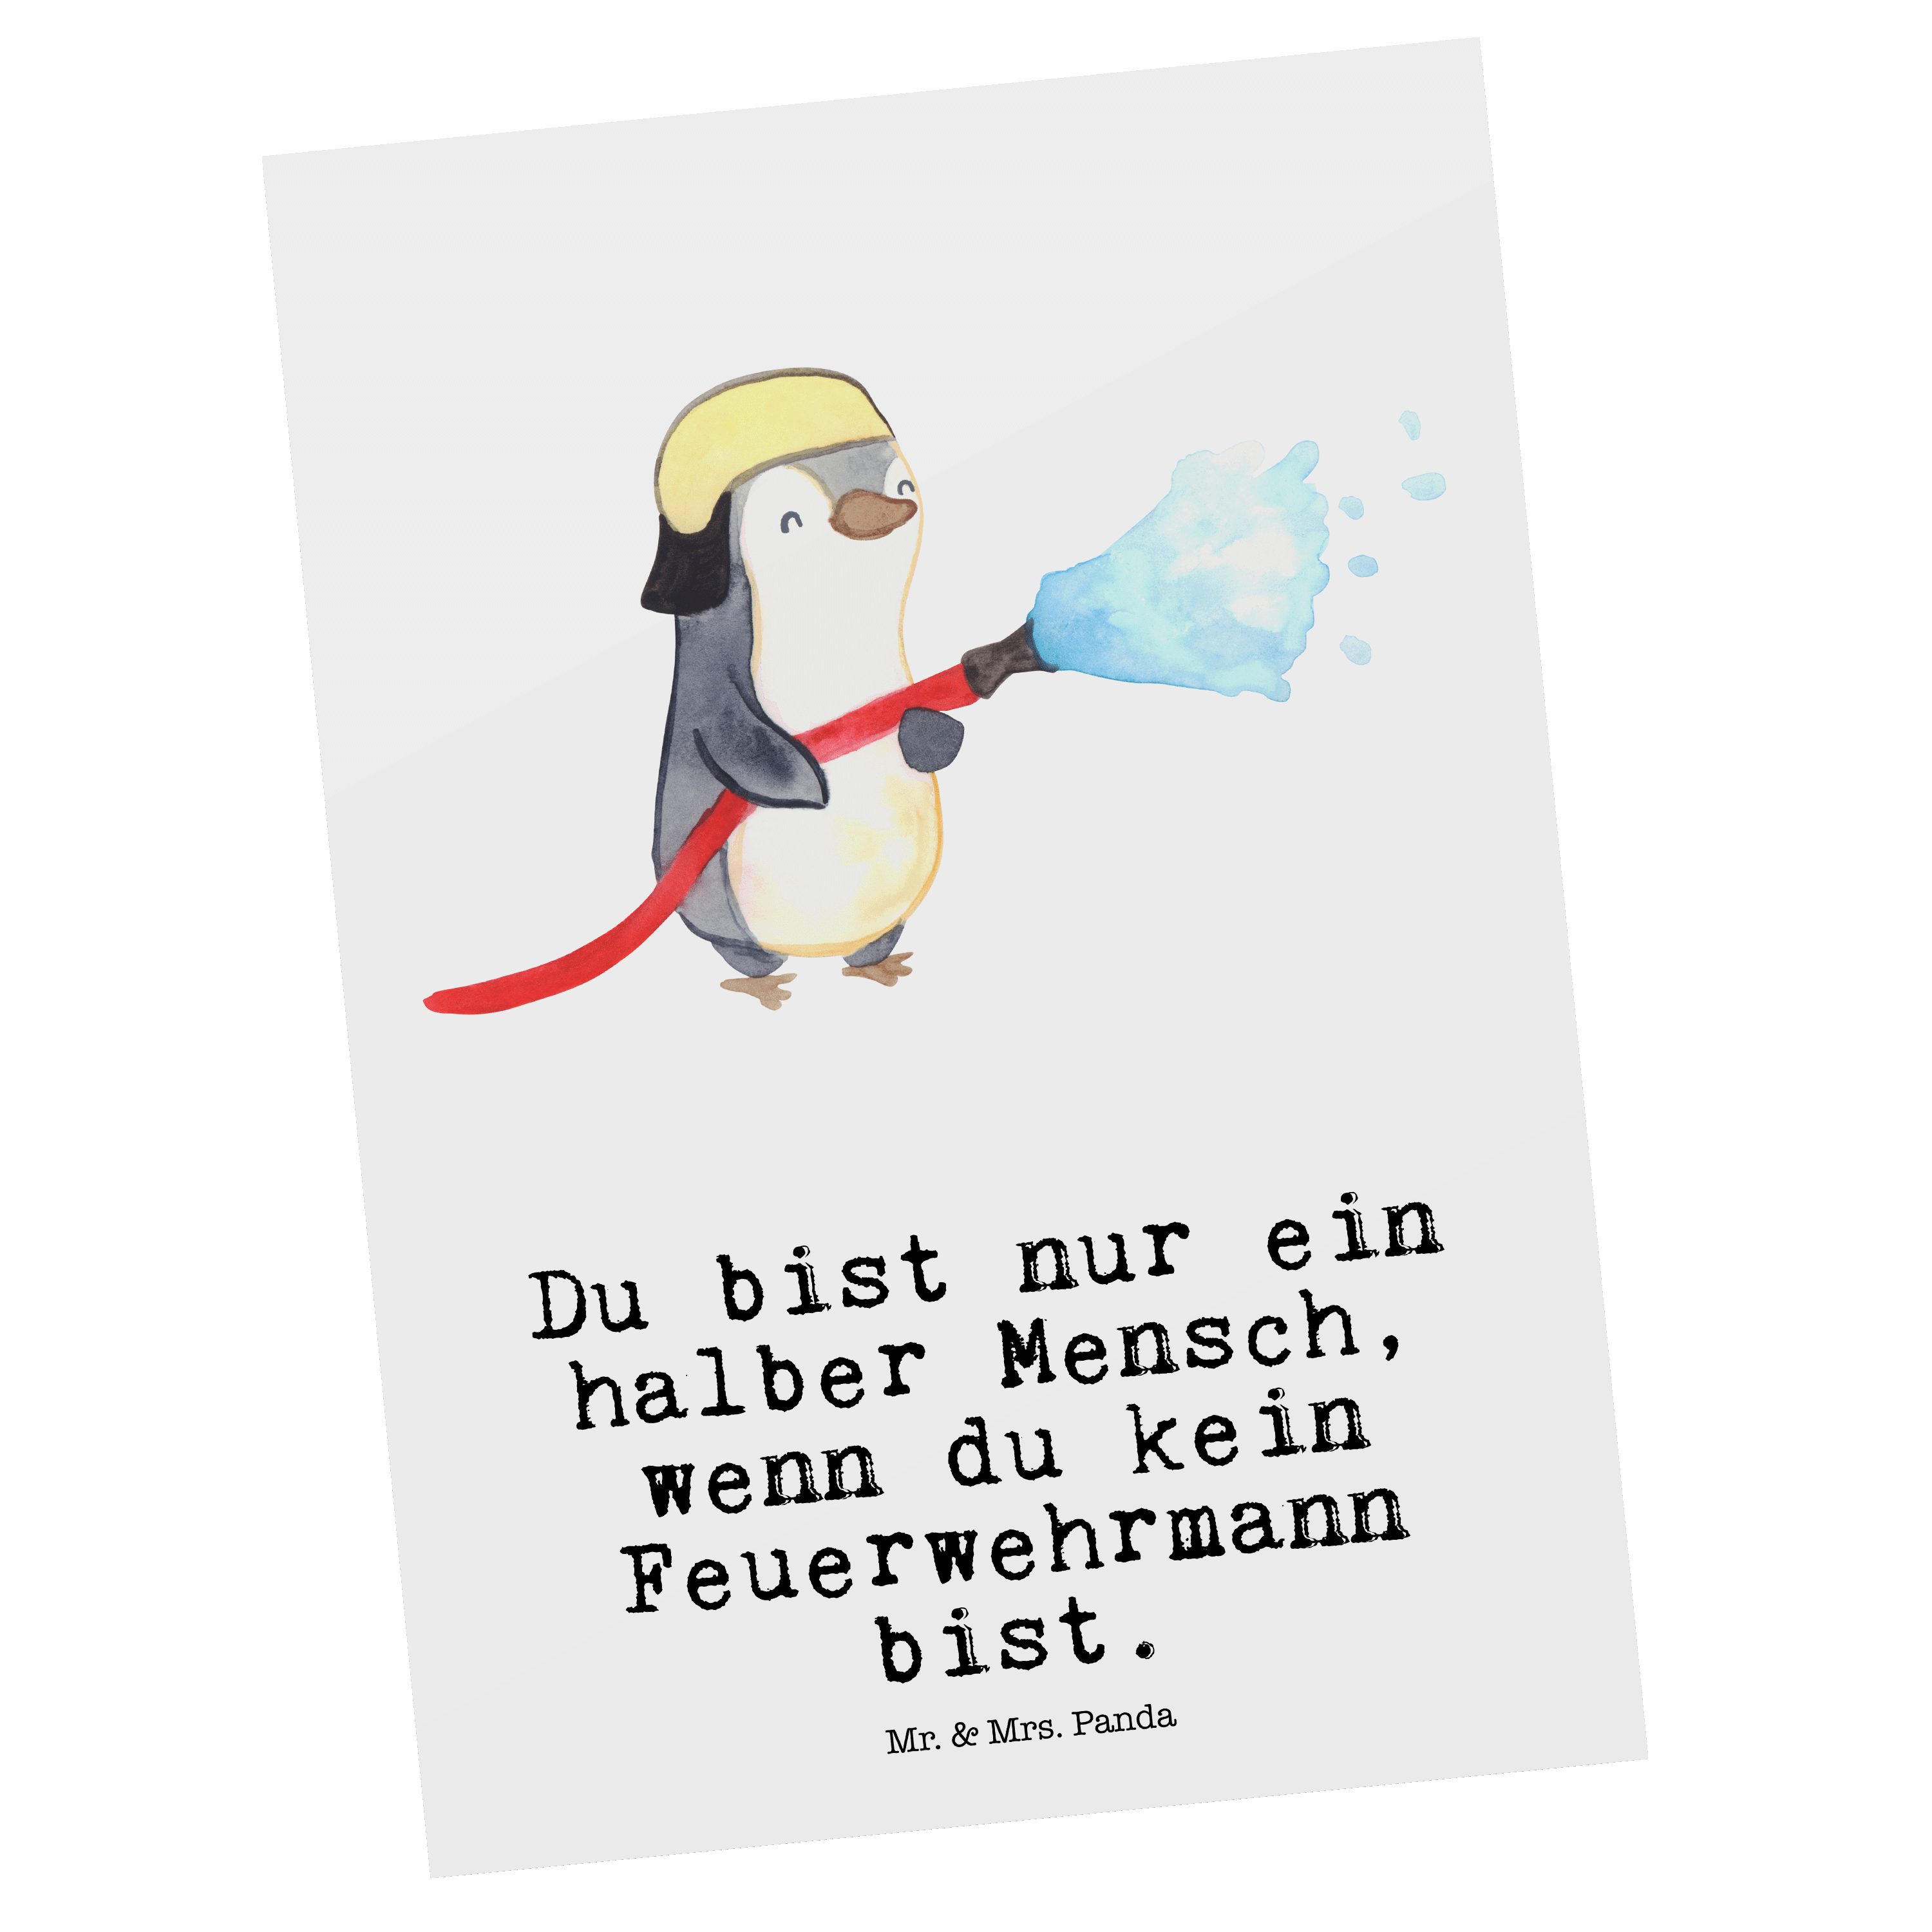 Mr. & Mrs. Panda Postkarte Feuerwehrmann mit Herz - Weiß - Geschenk, Feuerwehrhauptmann, freiwil